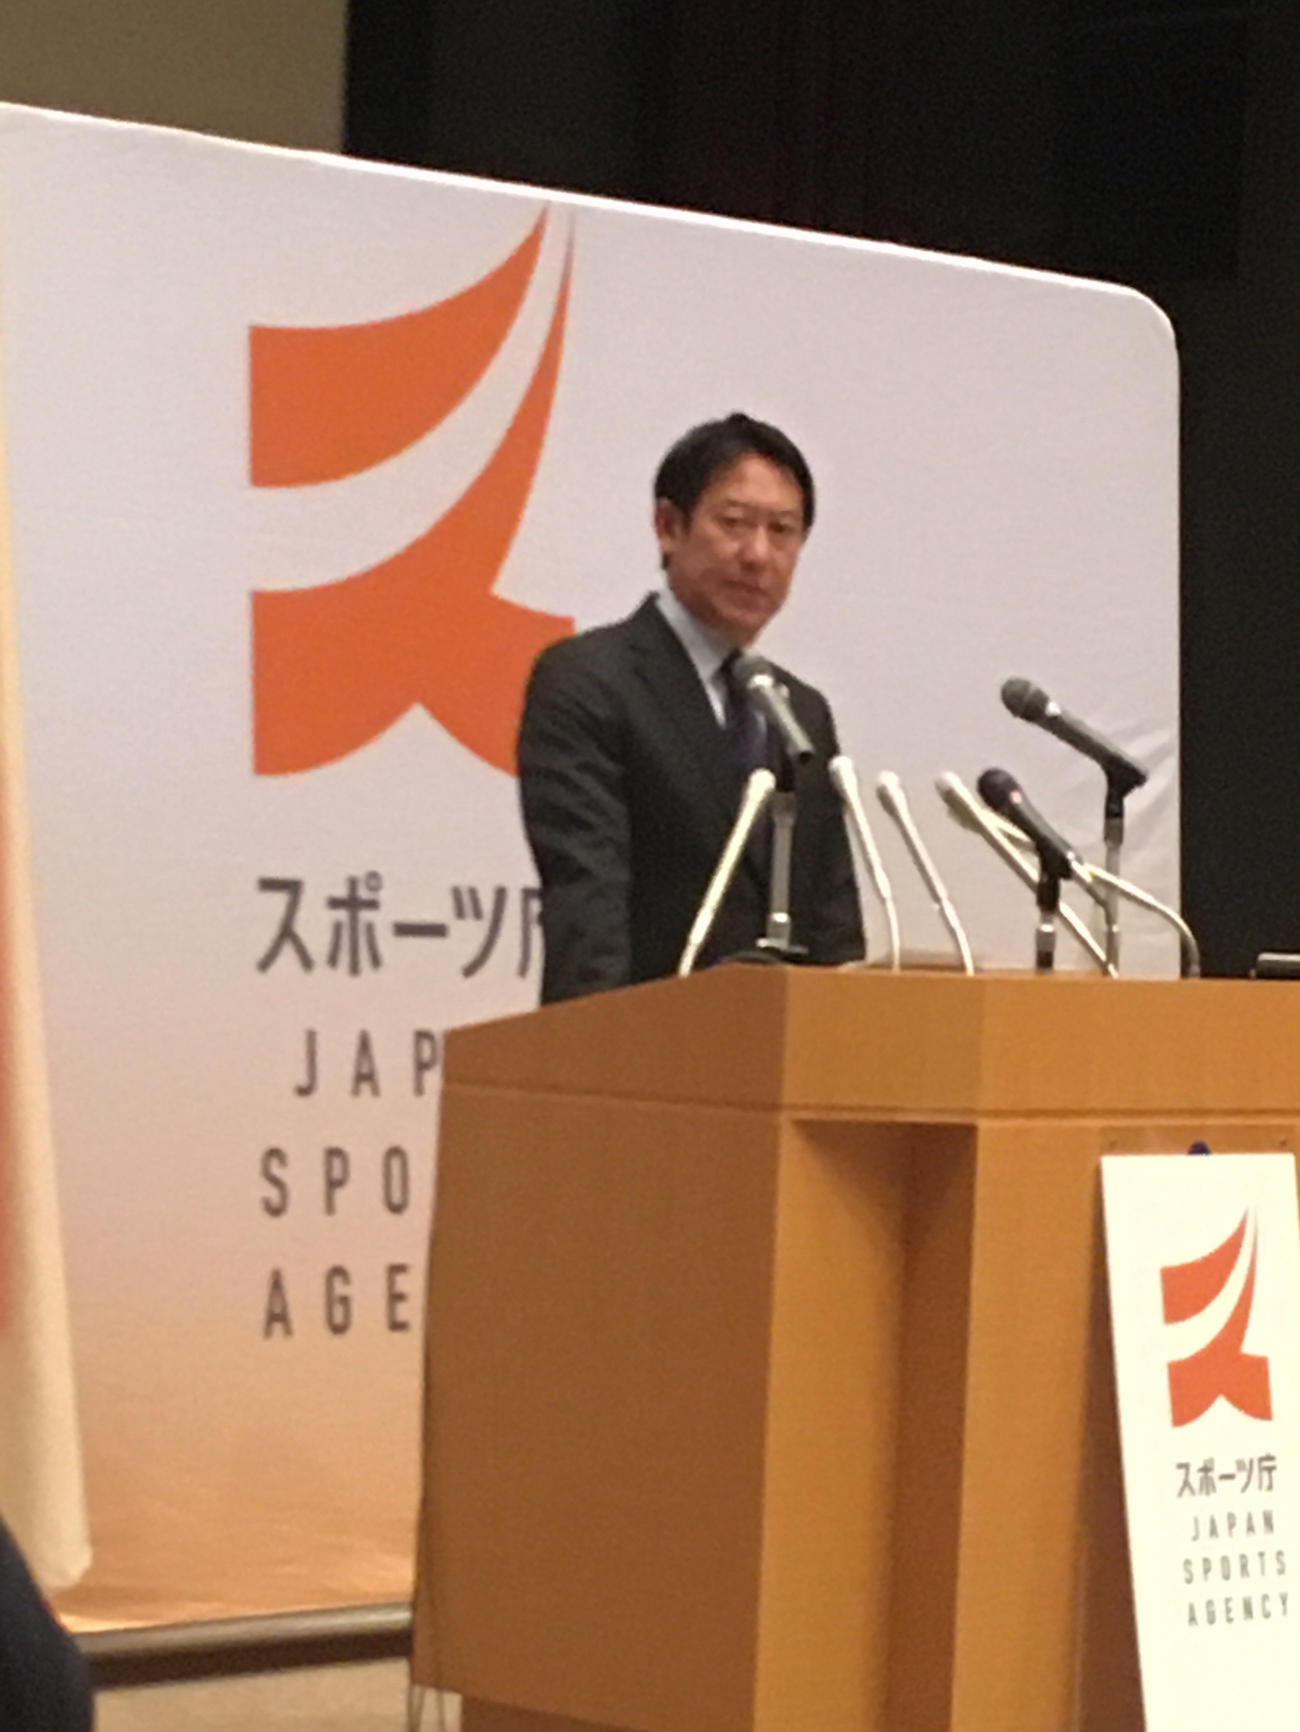 スポーツ庁としての新型コロナ対策を発表する鈴木大地長官